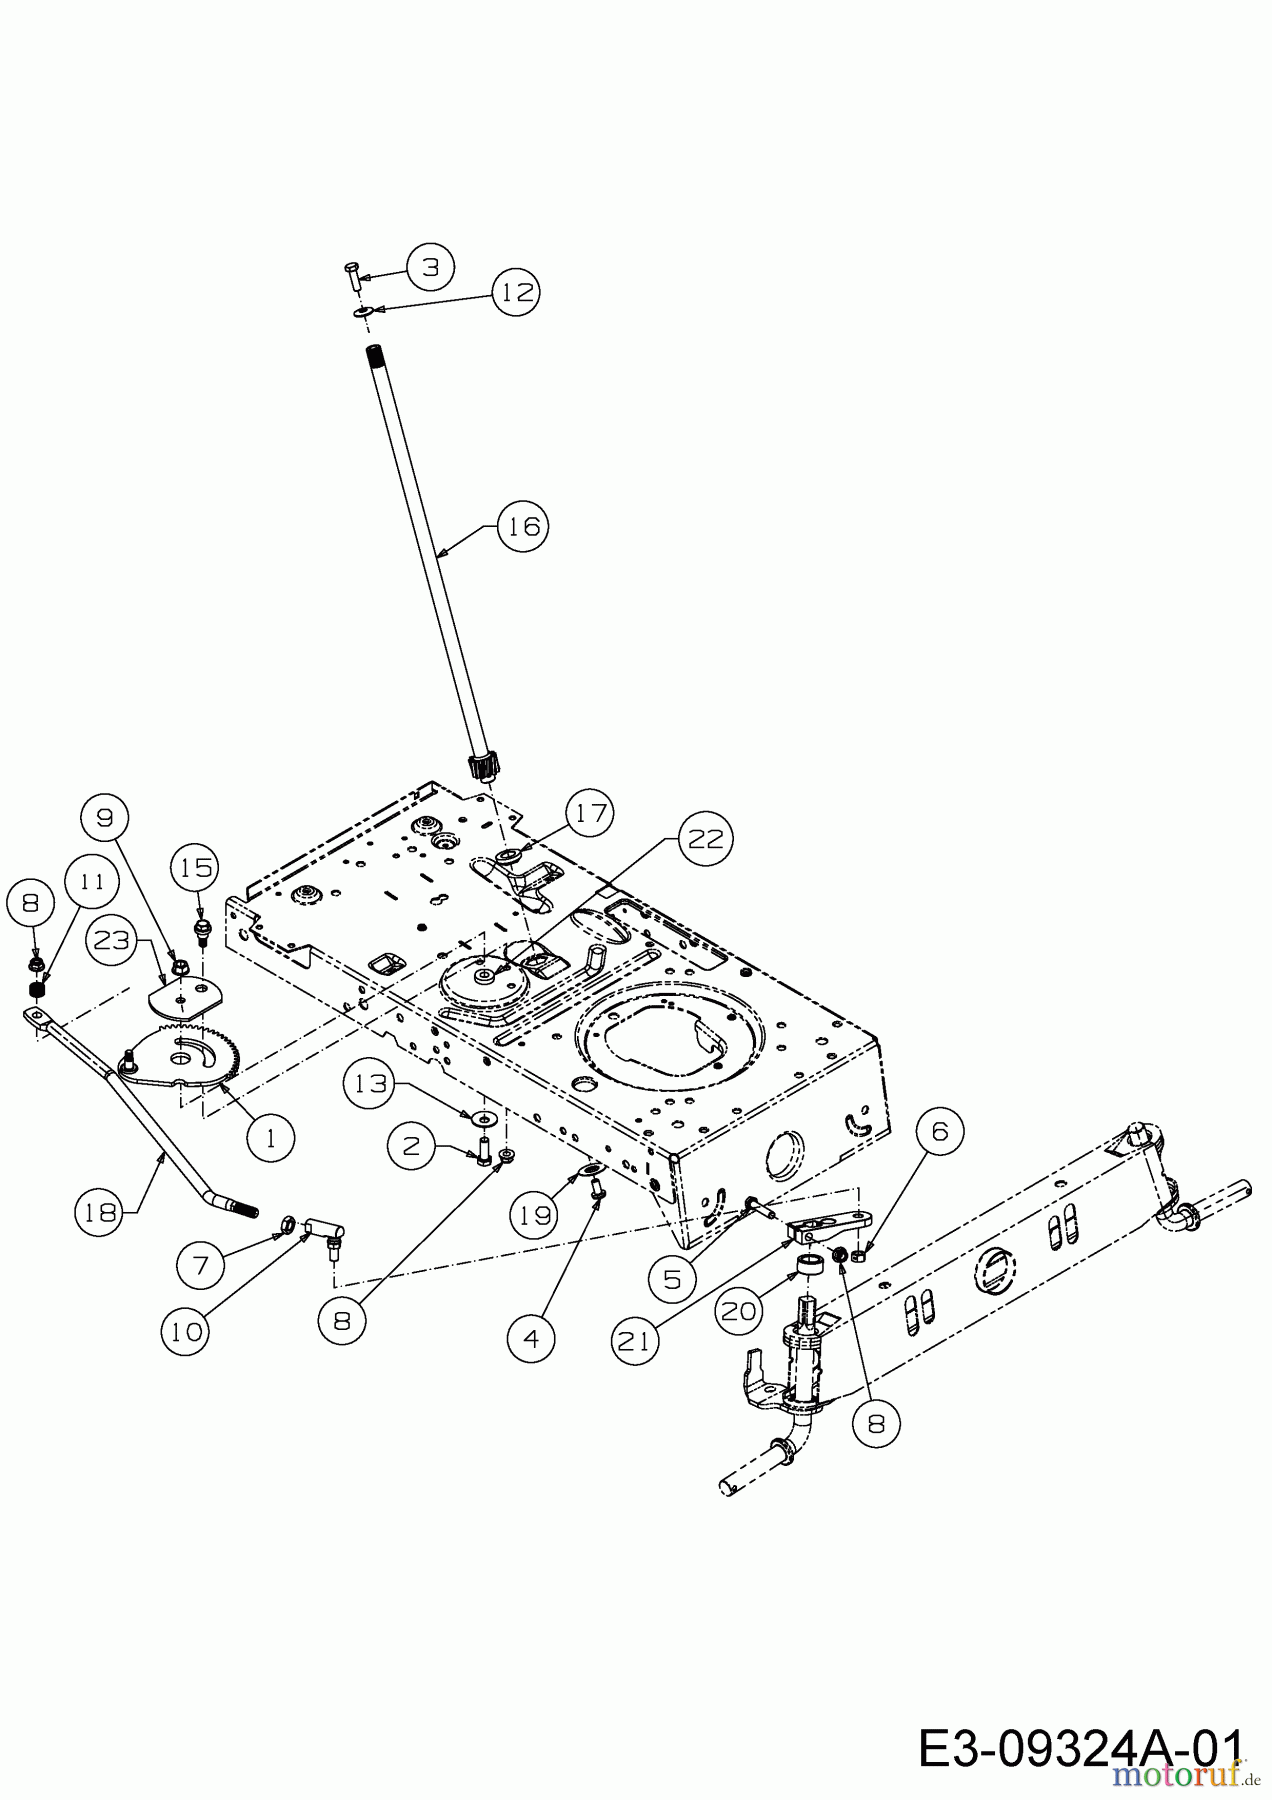  Wolf-Garten Lawn tractors E 13/92 T 13I2765E650  (2017) Steering